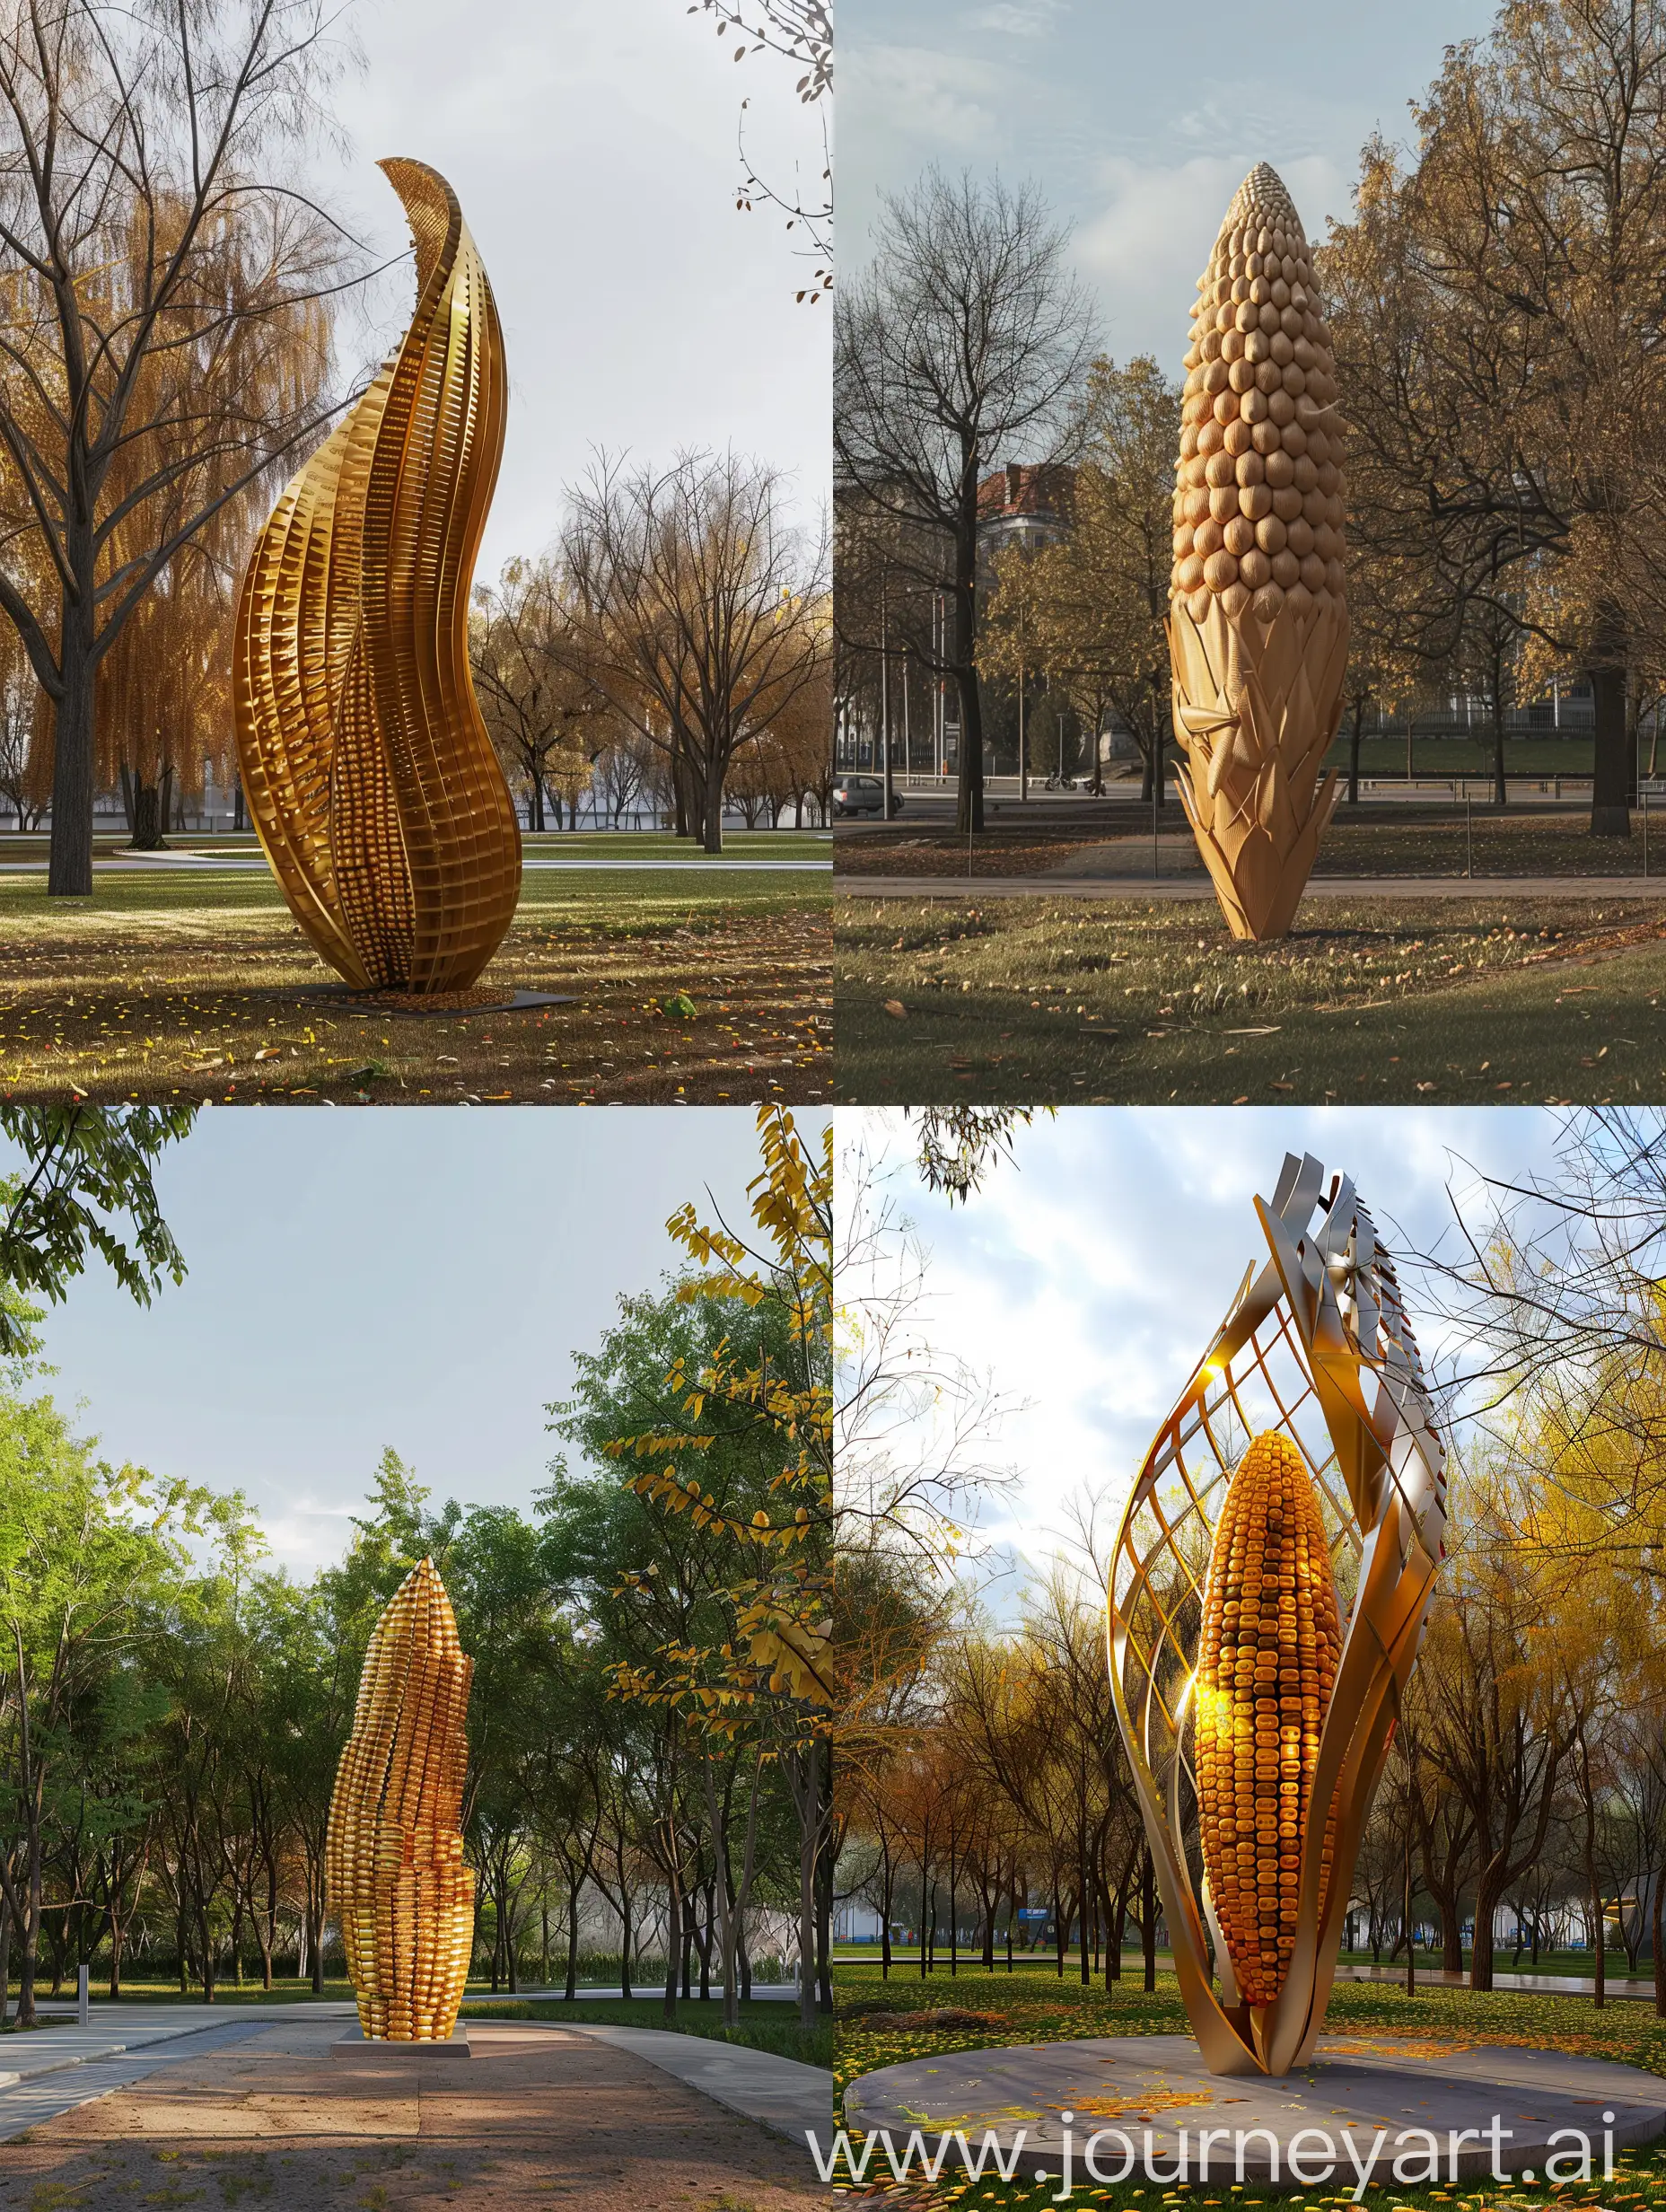 Creación de una escultura minimalista conceptual con el concepto de agricultura, tomando como objeto de referencia un elote, para colocarlo en medio de un parque